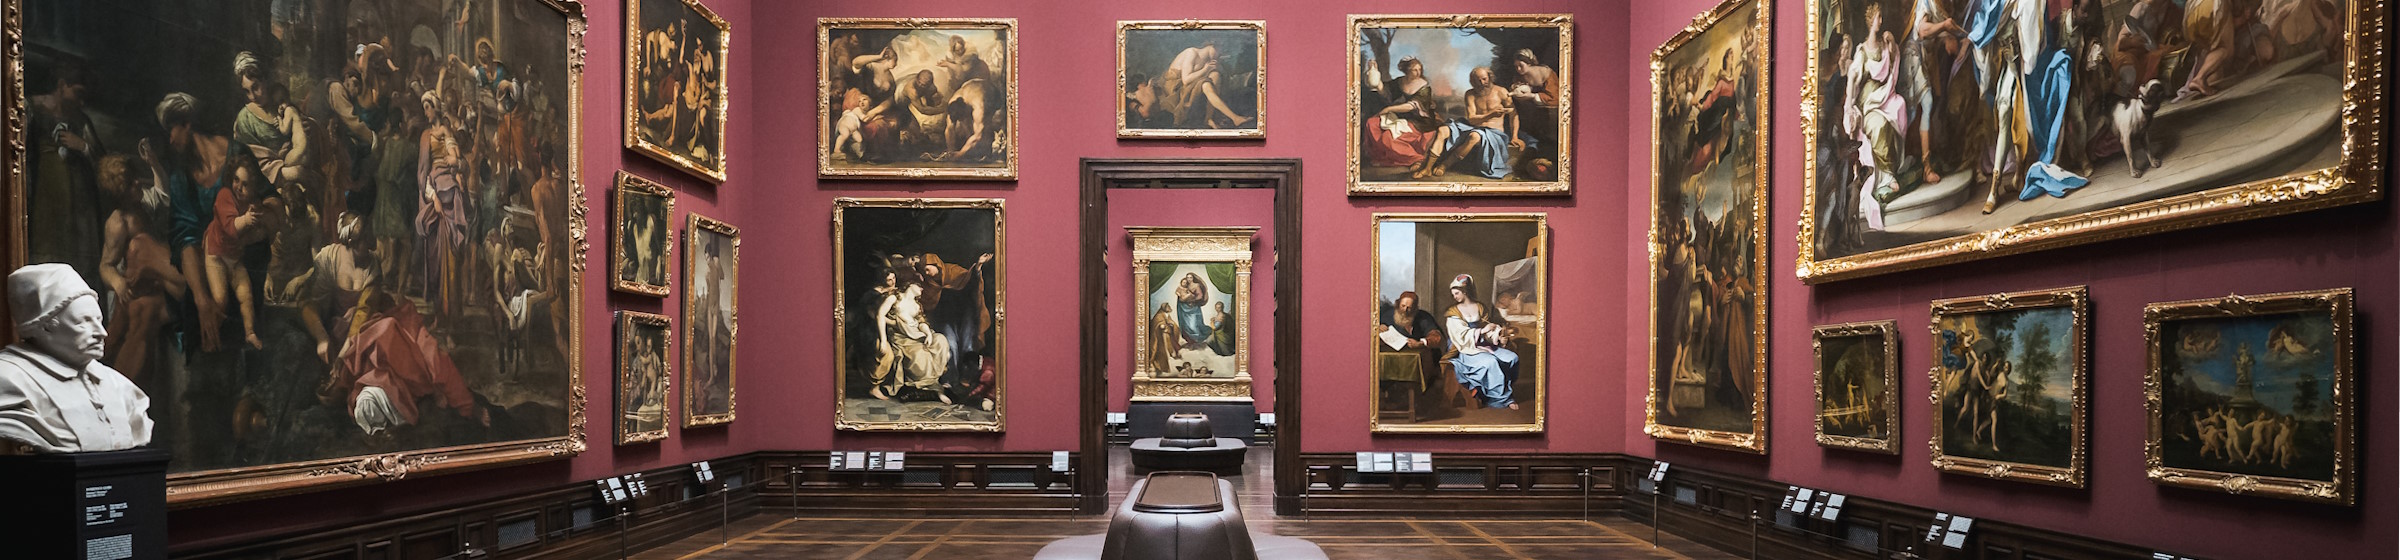 Die Gemäldegalerie Alte Meister mit Blick auf die Sixtinische Madonna von Rafael. Foto: Sebastian Weingart (DML-BY)